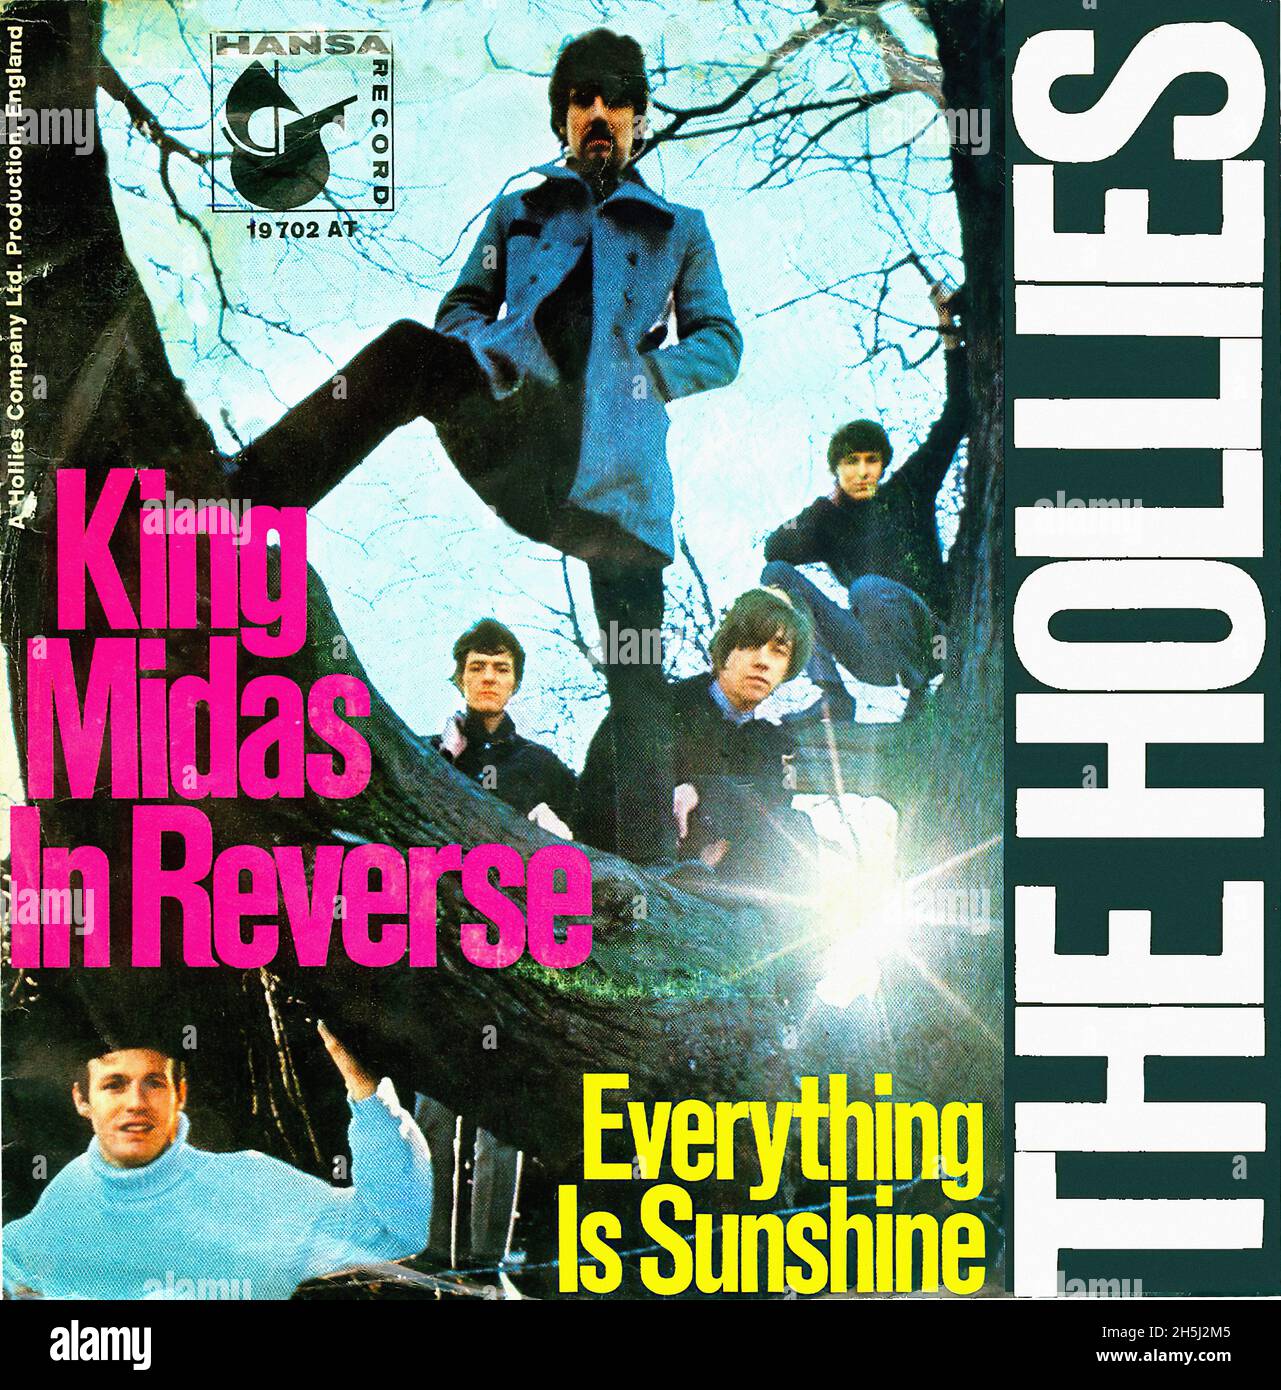 Couverture du record unique vintage - Hollies, The - King Midas en marche arrière - D - 1967 Banque D'Images